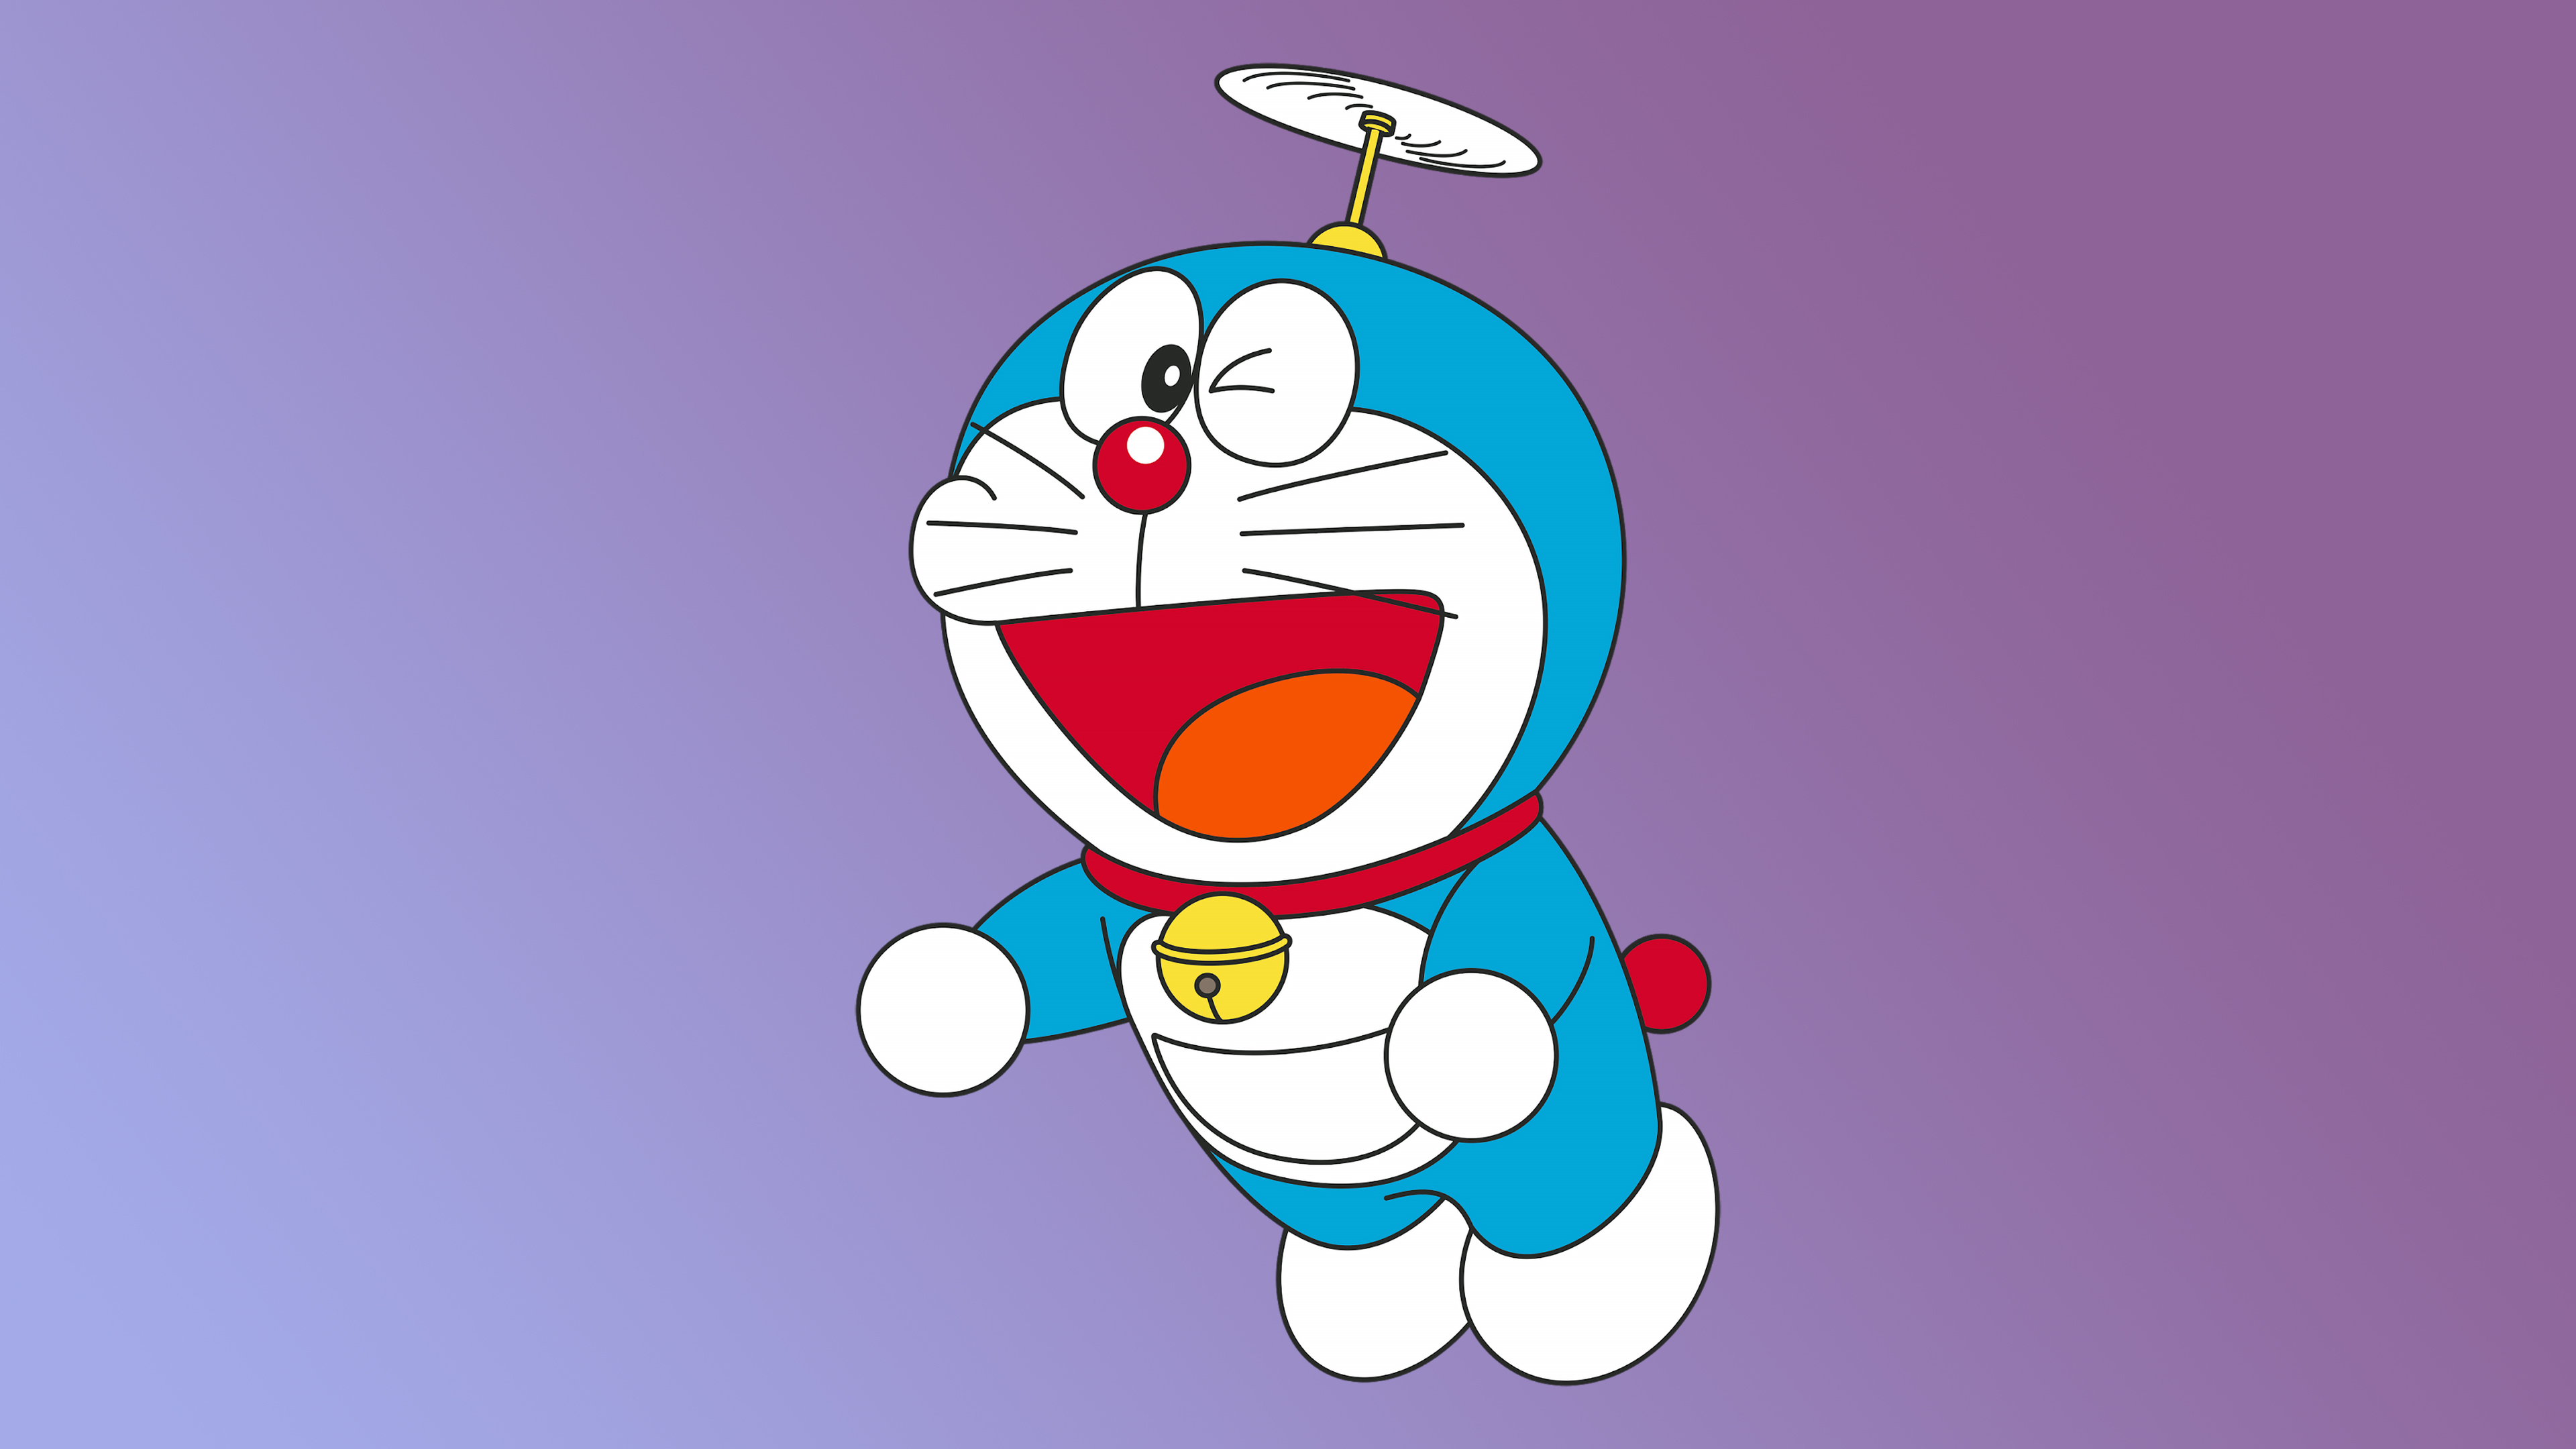 Doraemon Minimal 4K Wallpaper, HD Cartoon 4K Wallpaper, Image